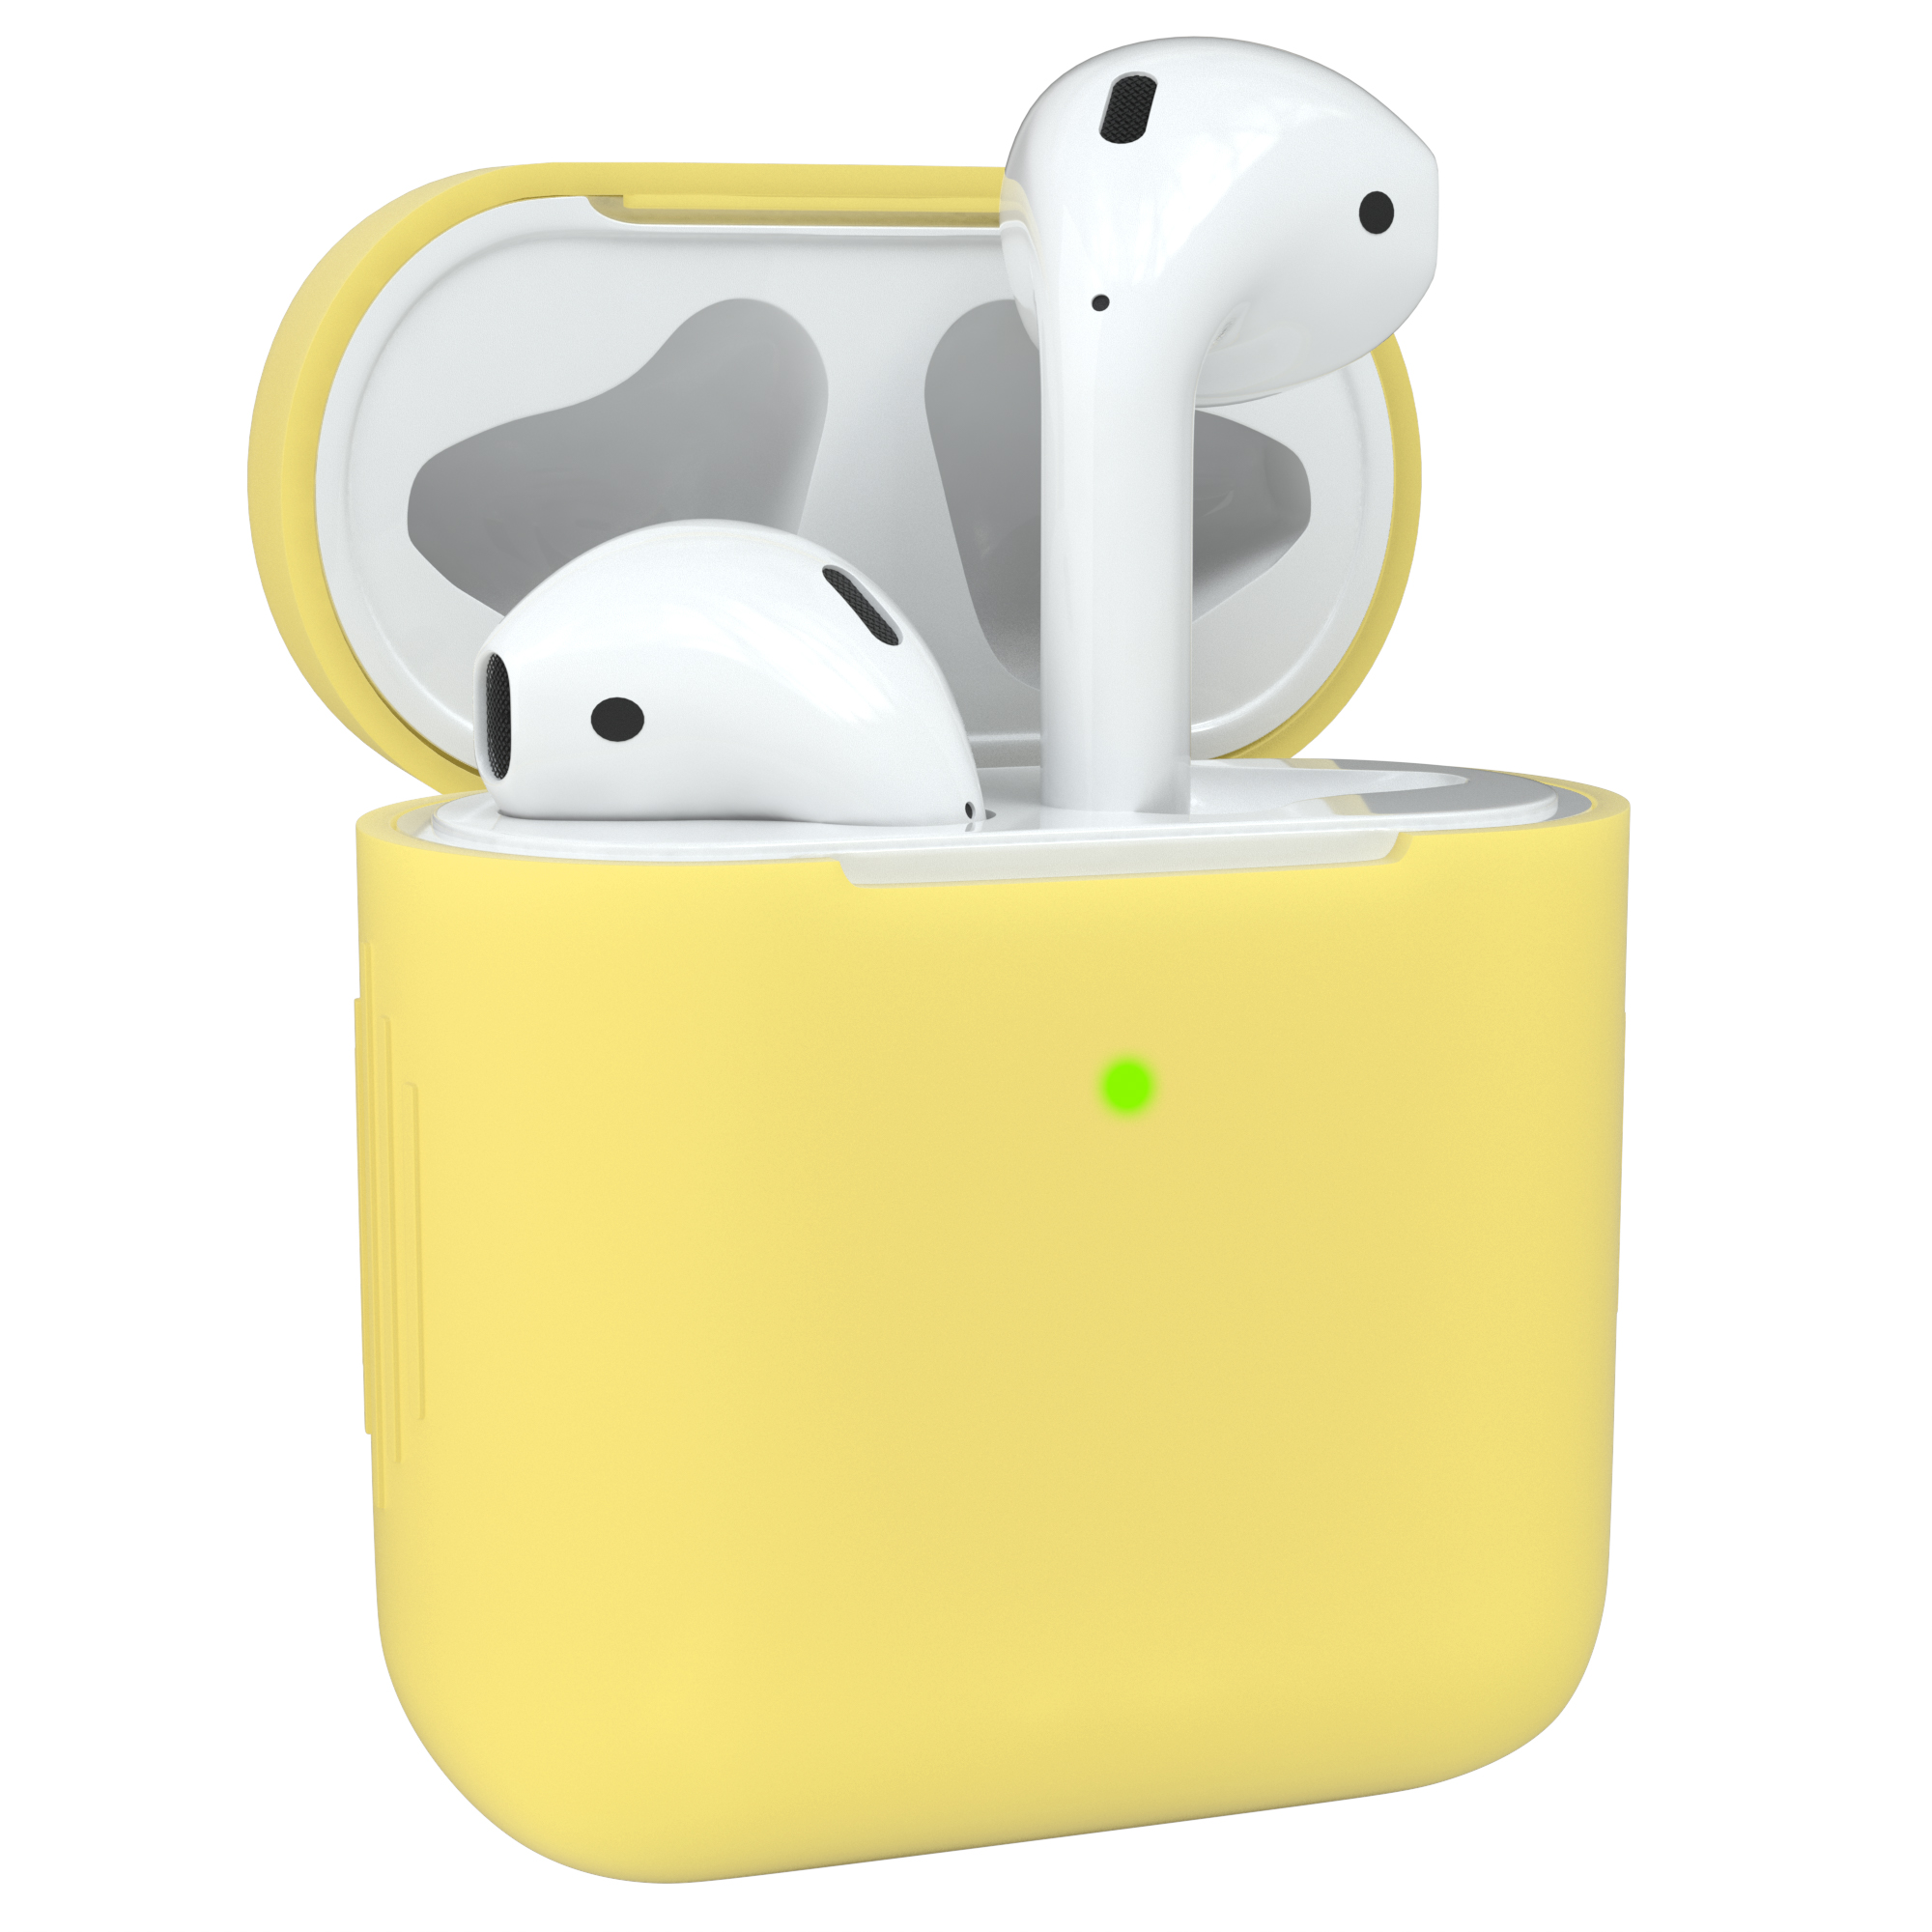 EAZY CASE AirPods Silikon Apple passend Schutzhülle Gelb für: Sleeve Case